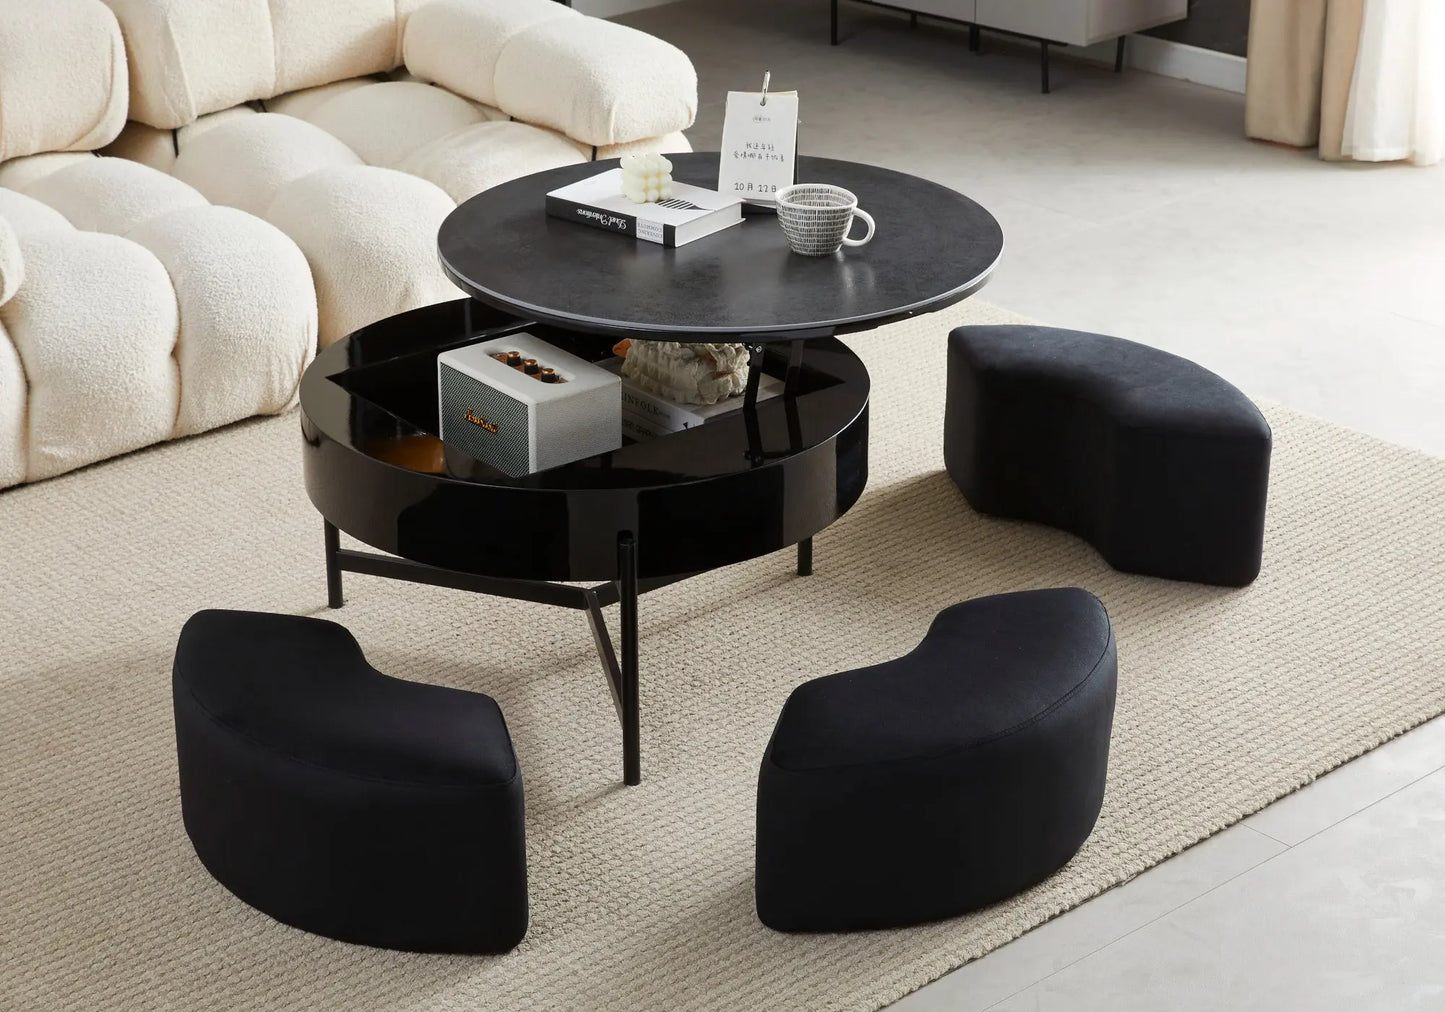 Table basse pouf noir céramique VÉGA New Design